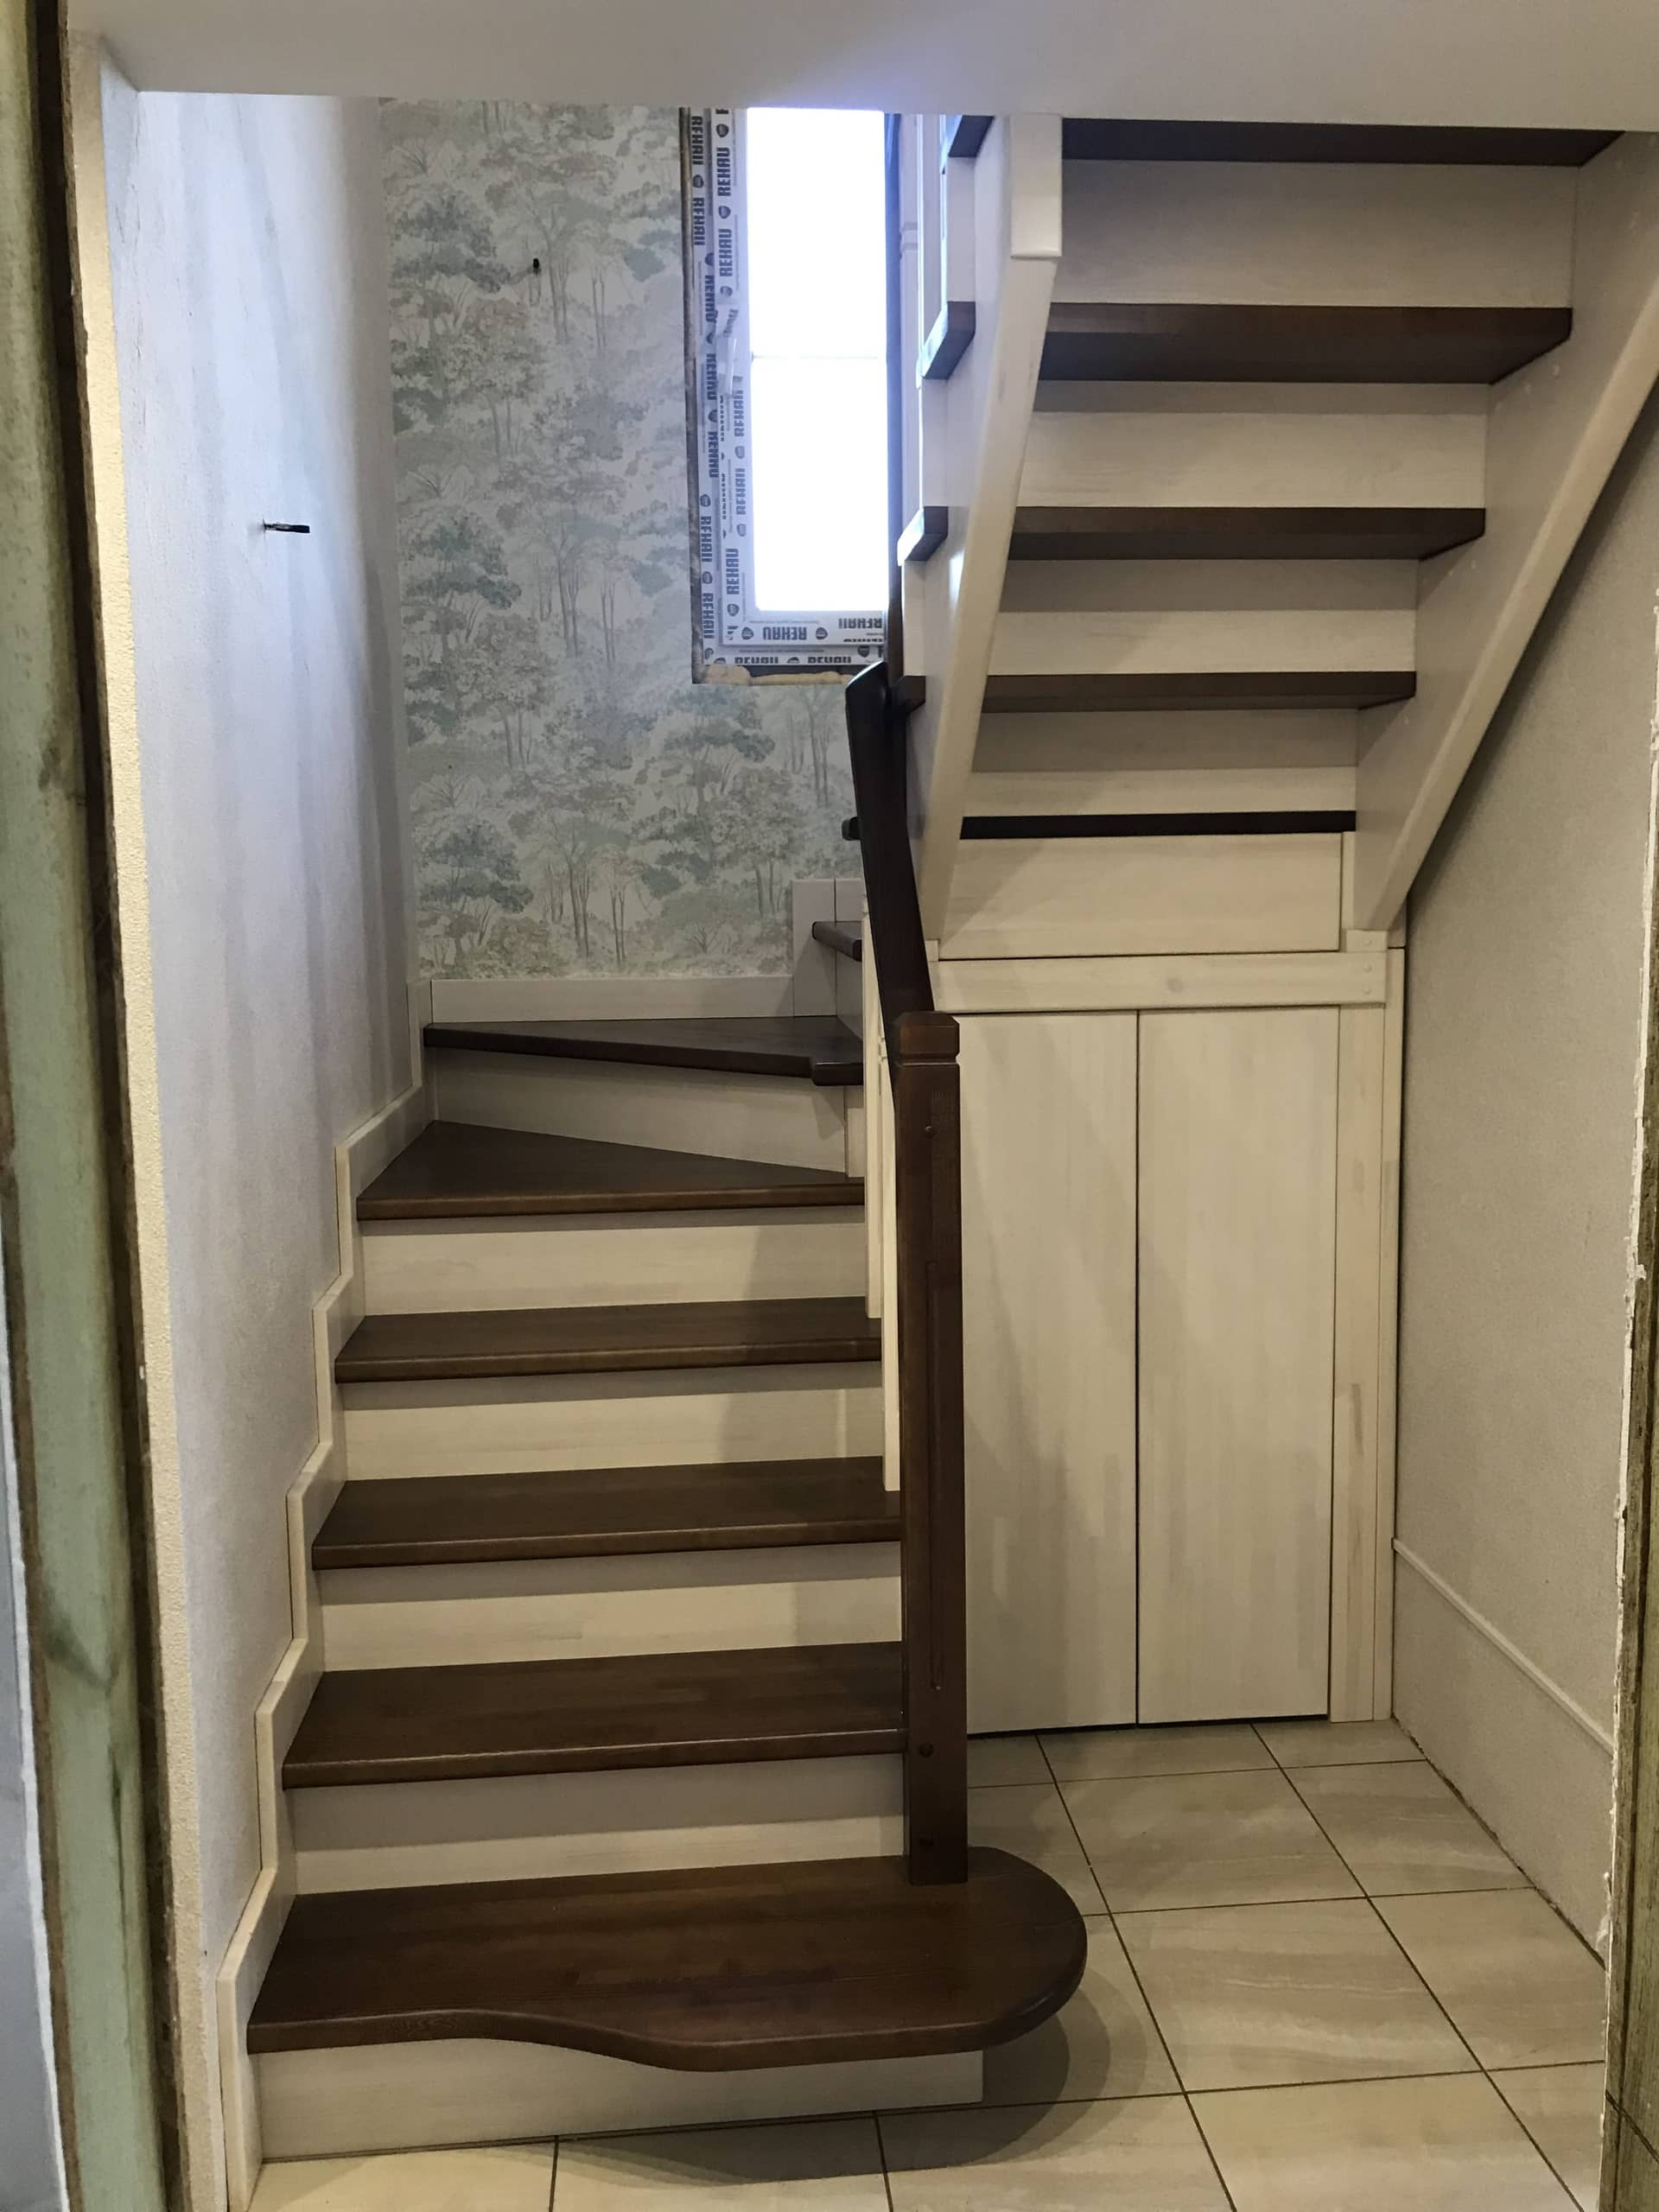 Фото П - образной деревянная лестница с 4-мя пповоротными ступенями 180 градусов.